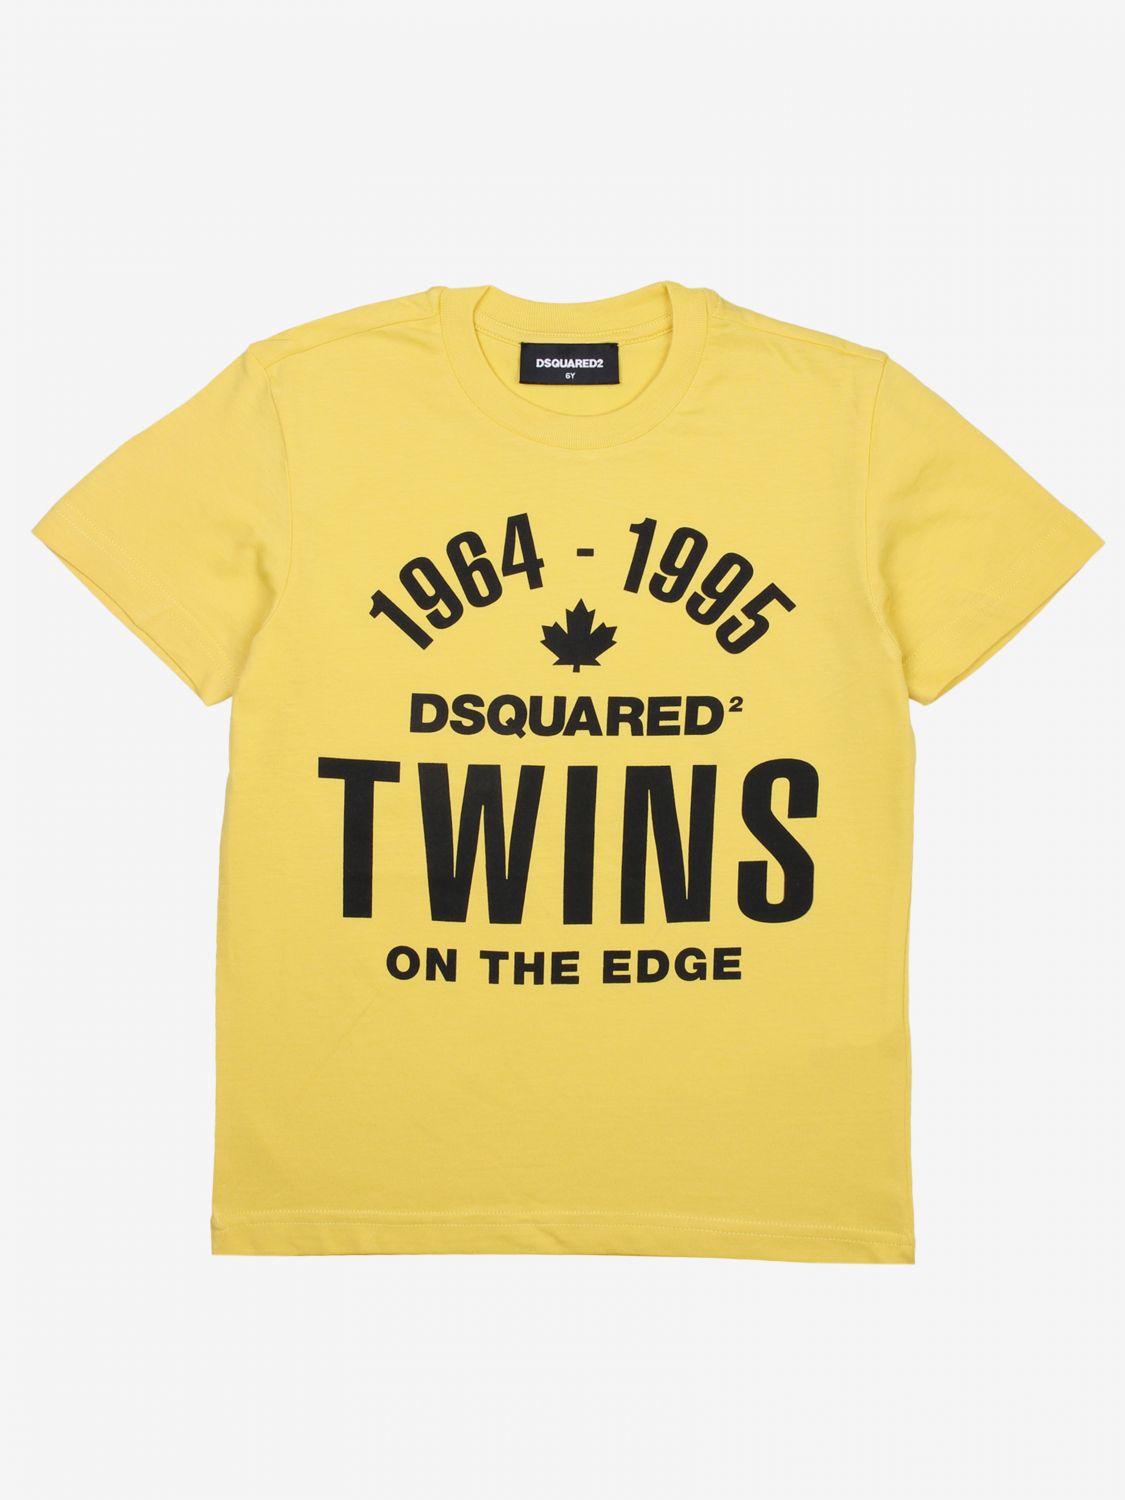 tee shirt dsquared2 jaune